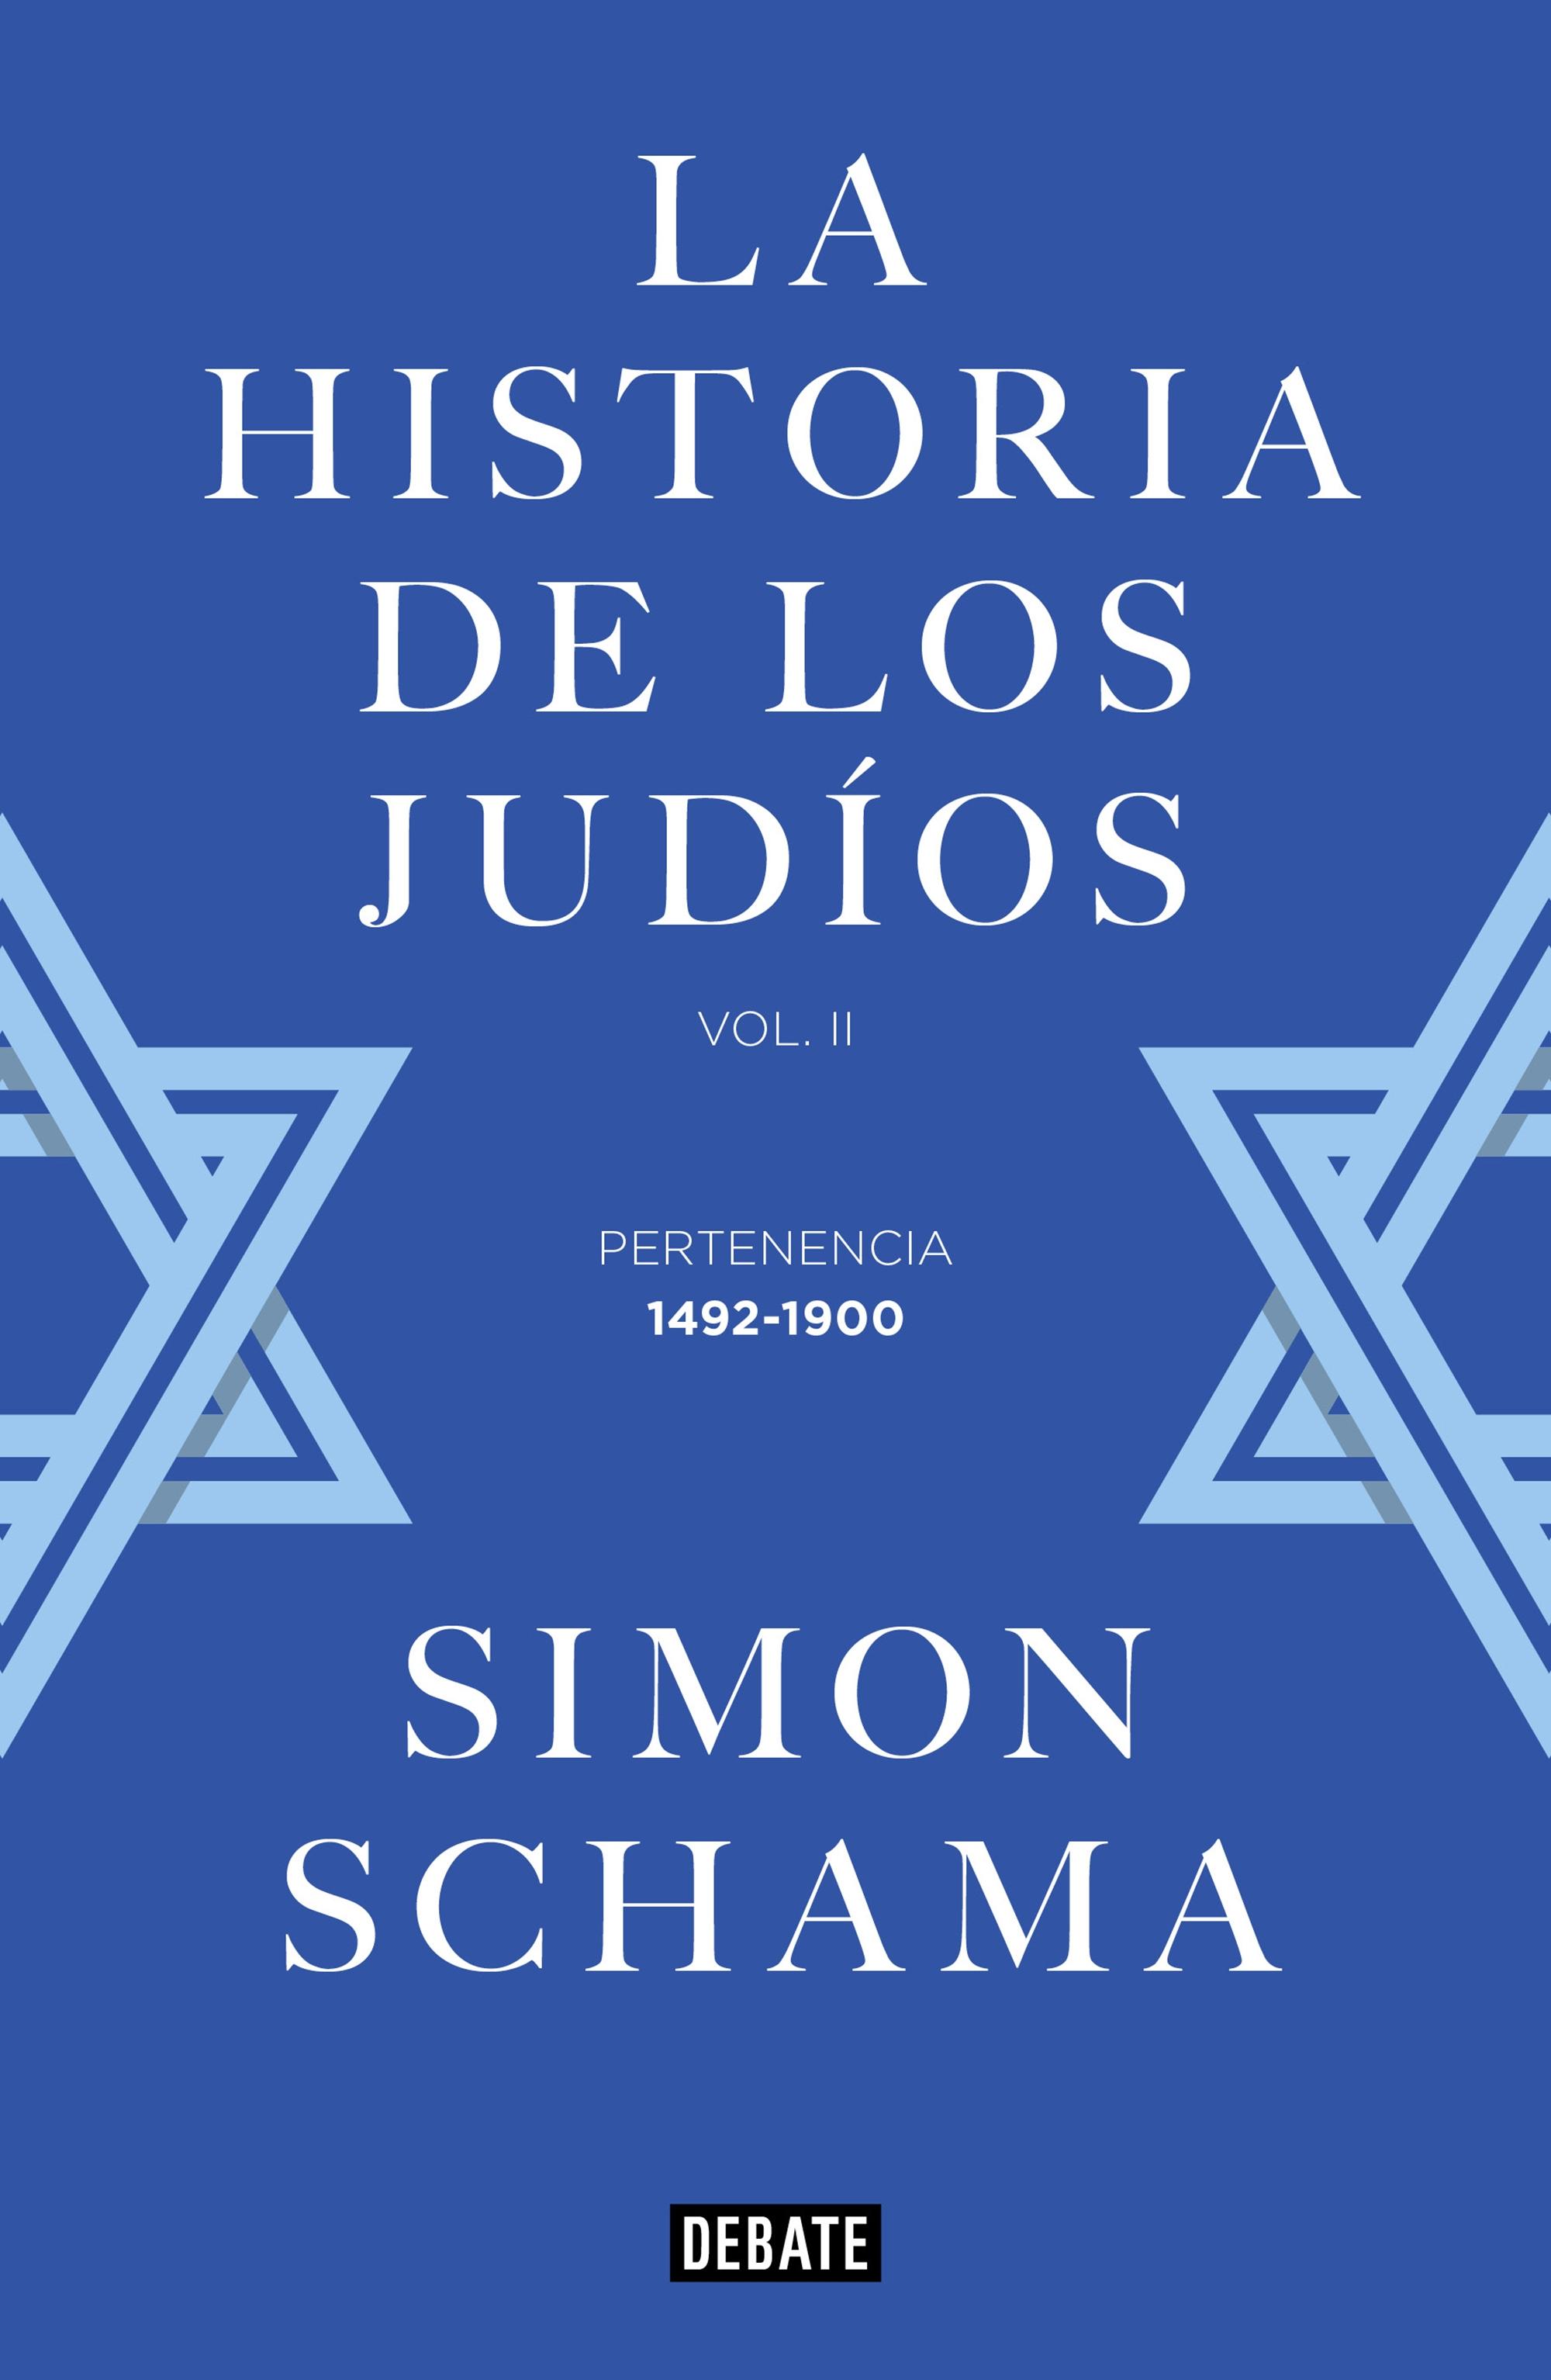 La Historia de los Judíos "Vol. II - Pertenencia, 1492-1900"